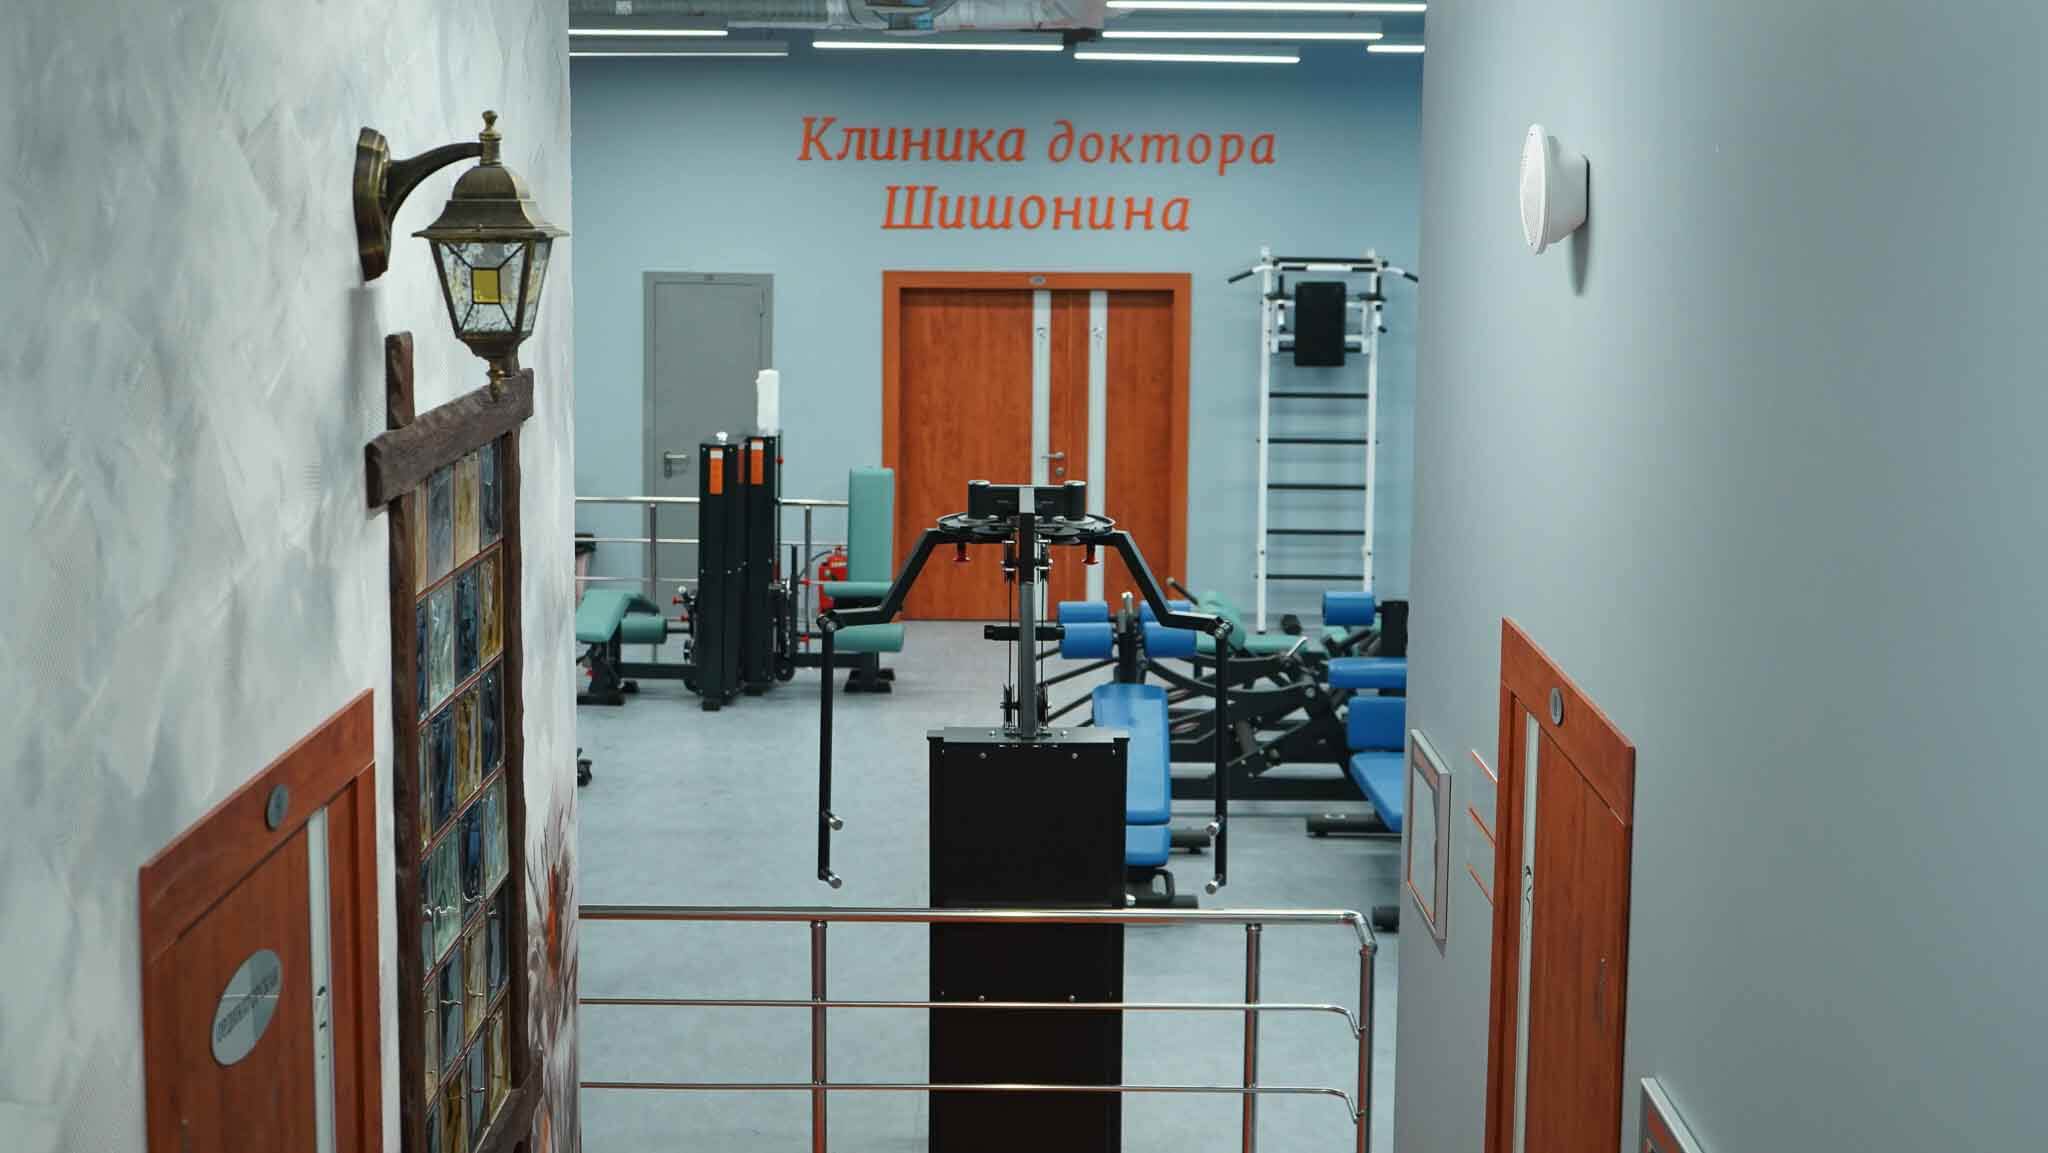 Фото зала для занятий в клиниках доктора Шишонина